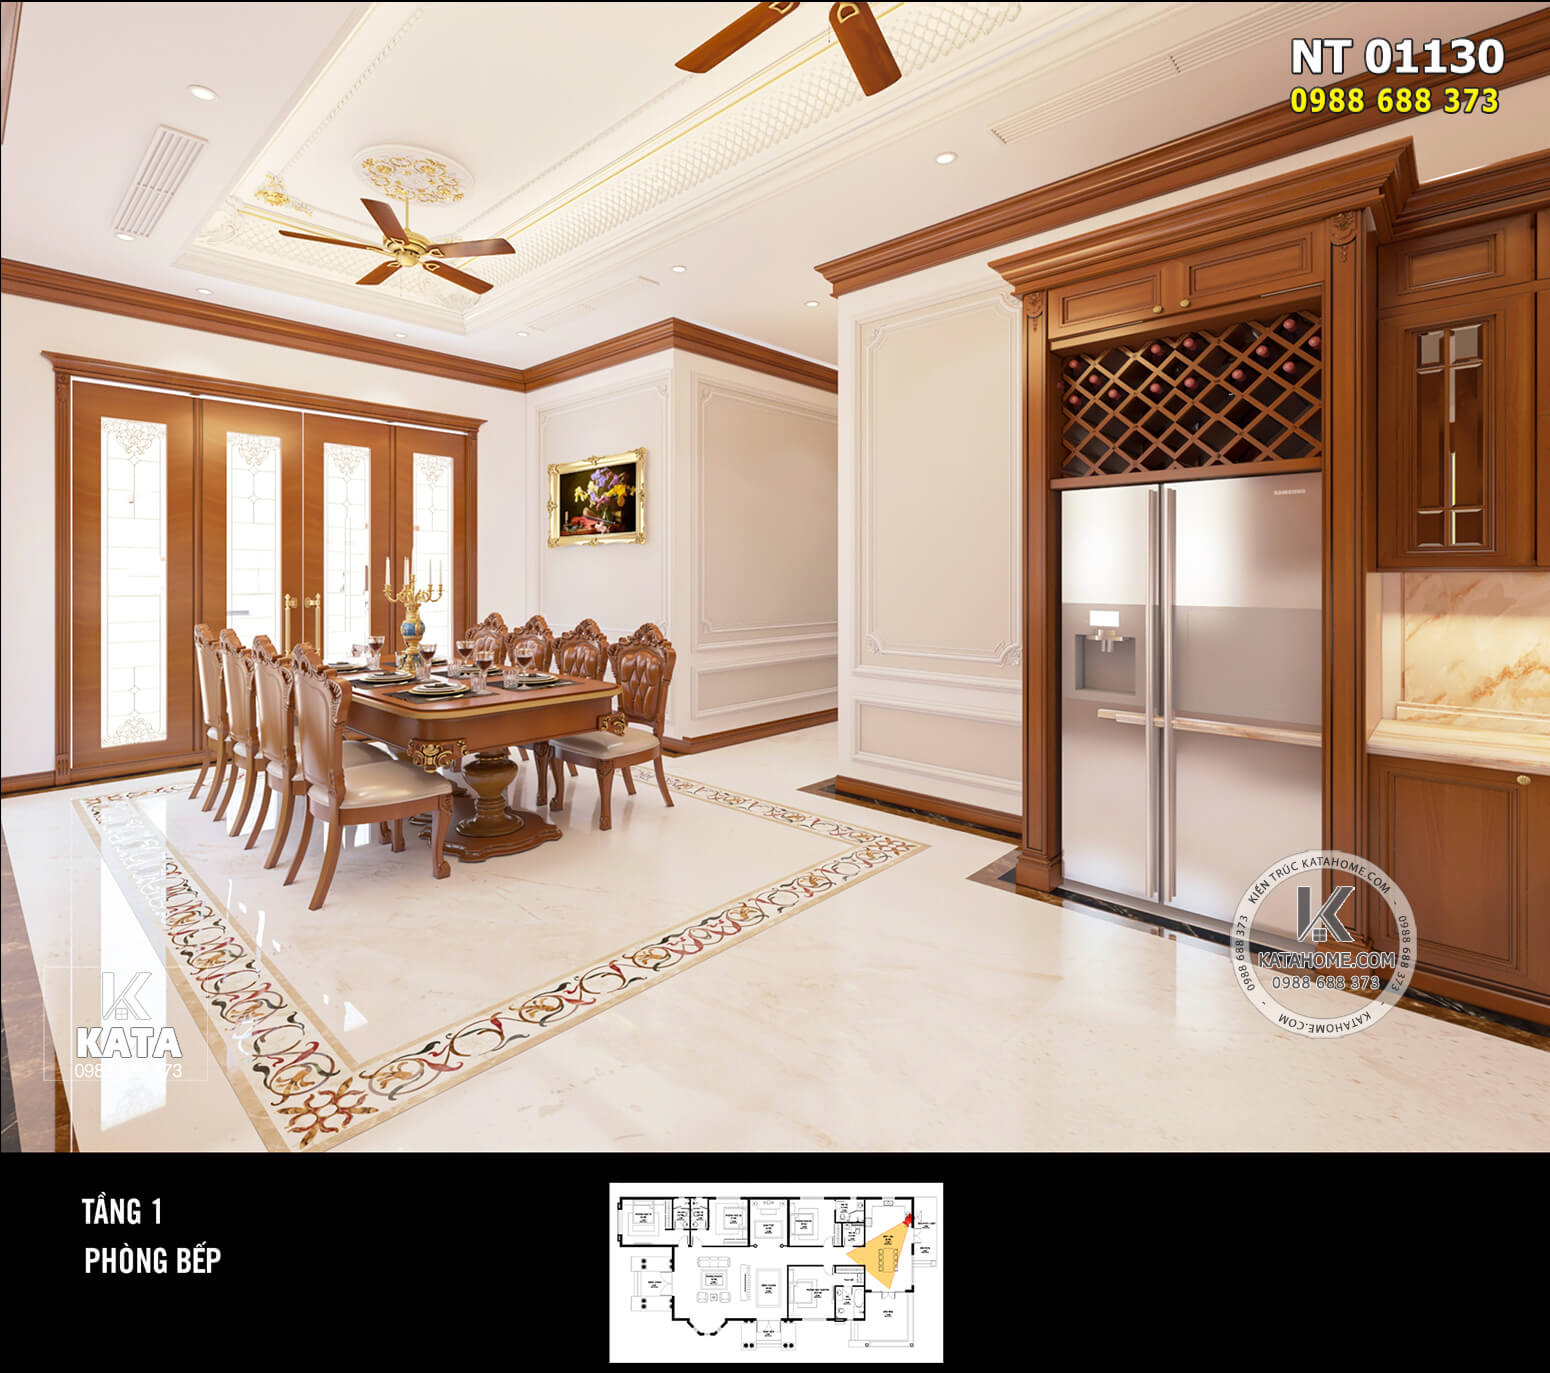 Thiết kế nội thất tân cổ điển gỗ kết hợp thạch cao sang trọng, trẻ trung - Mã số: KATA 01130